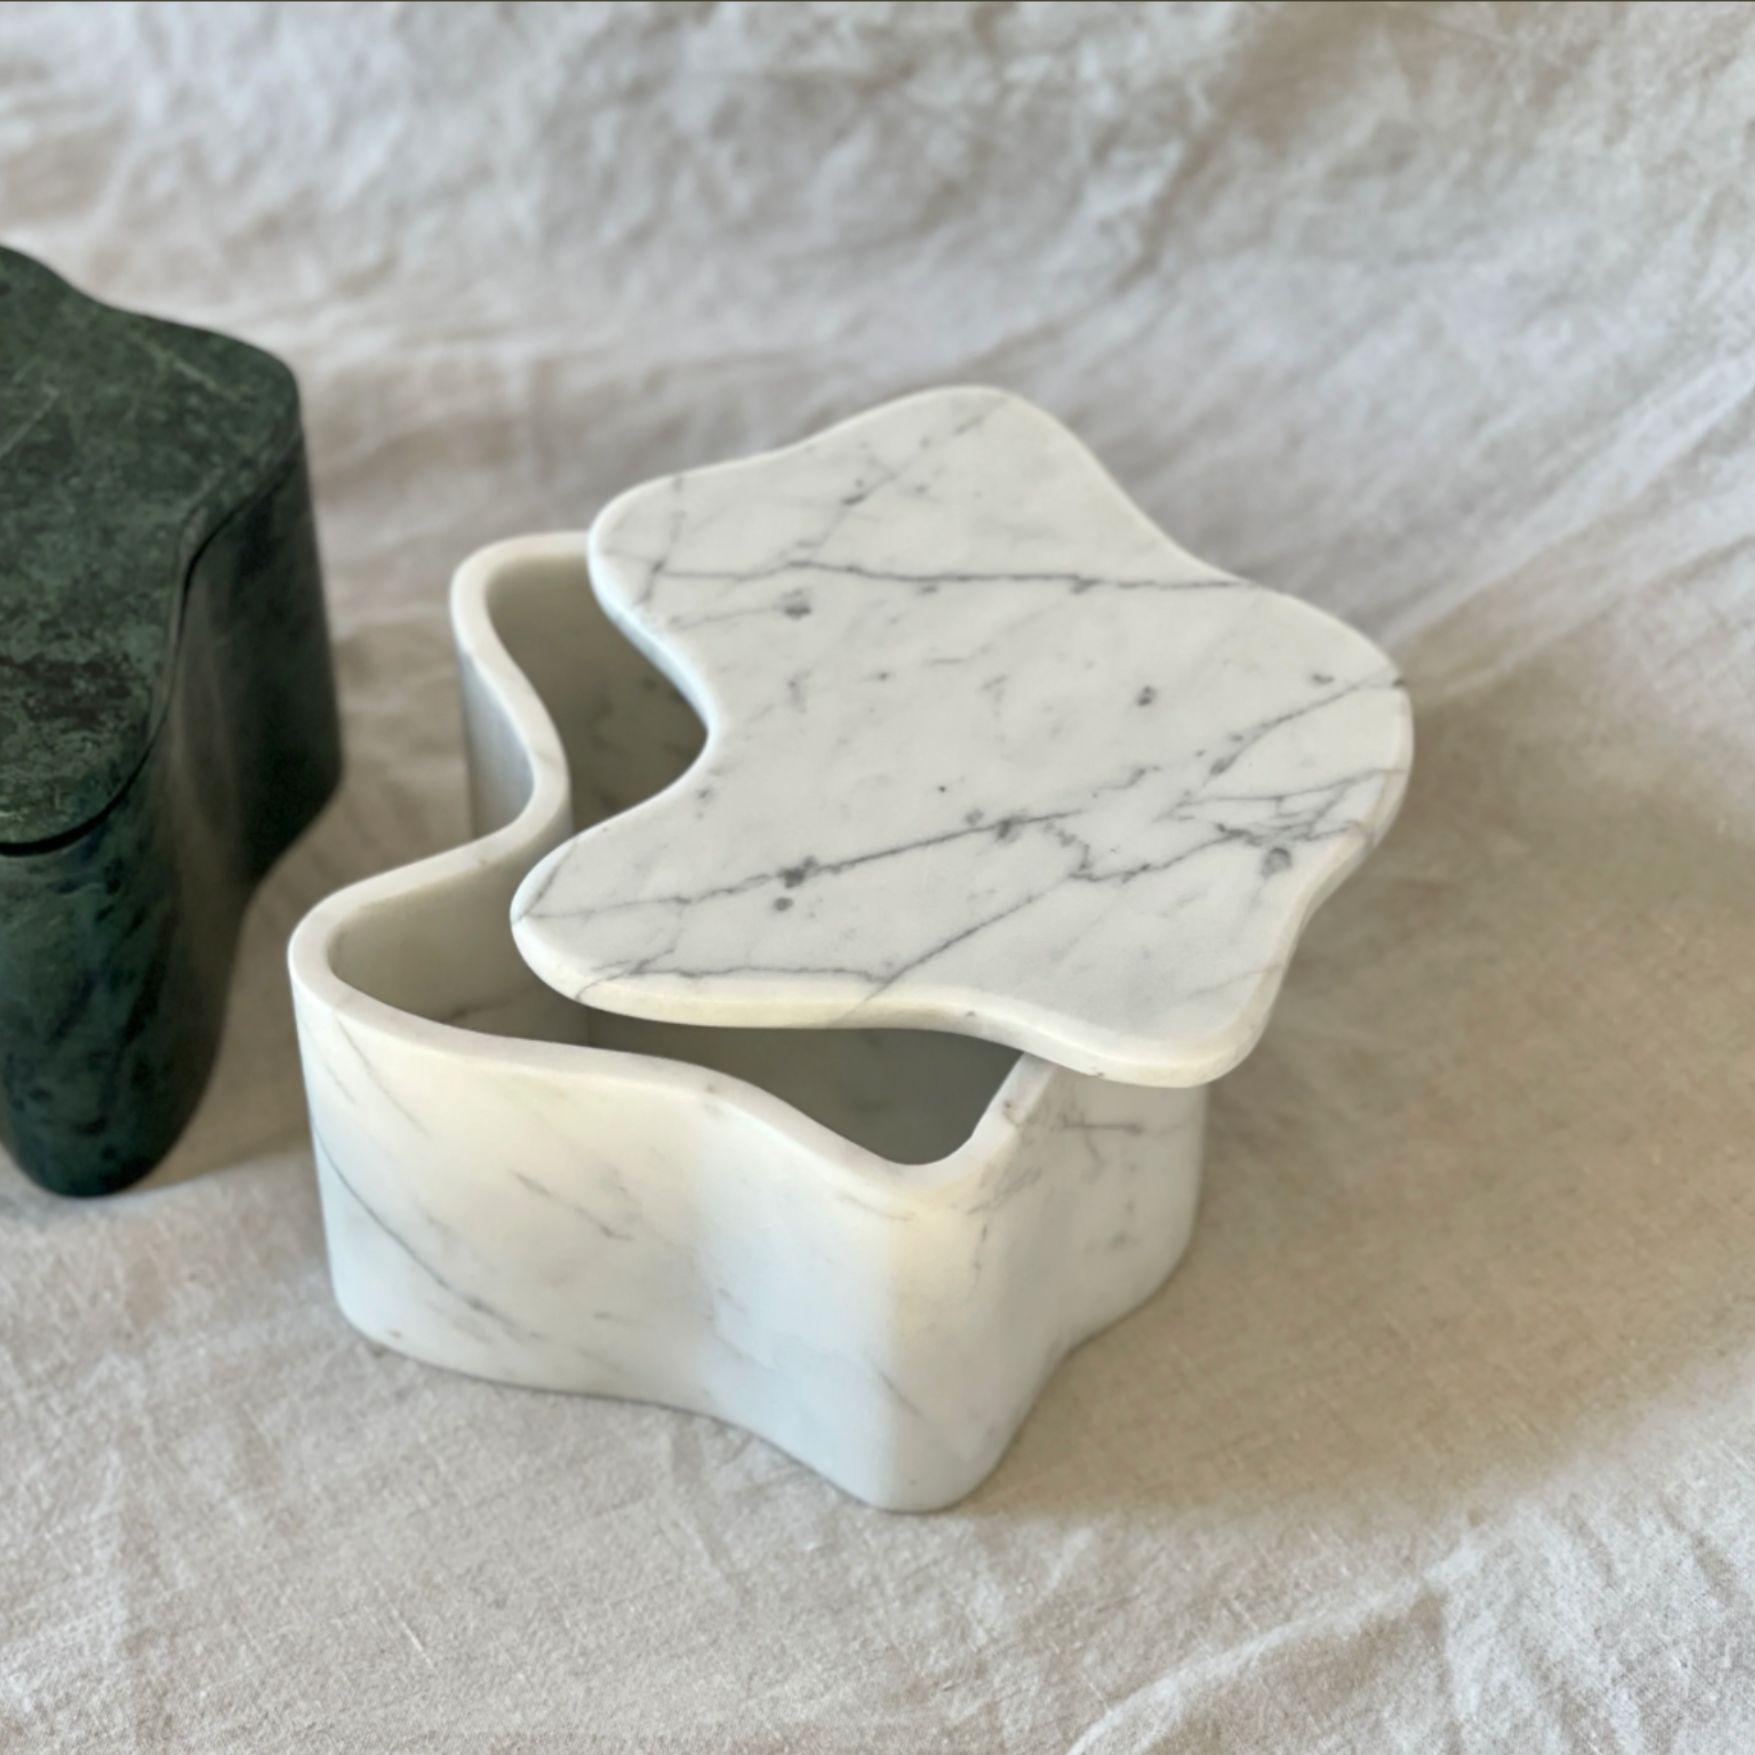 Voici la boîte Flo, signée Anastasio Home. Fabriqué à la main à partir d'un seul bloc de marbre exquis, ce pot de toilette à couvercle est une création unique. 

Avec son poids substantiel et sa présence imposante, il sert non seulement de